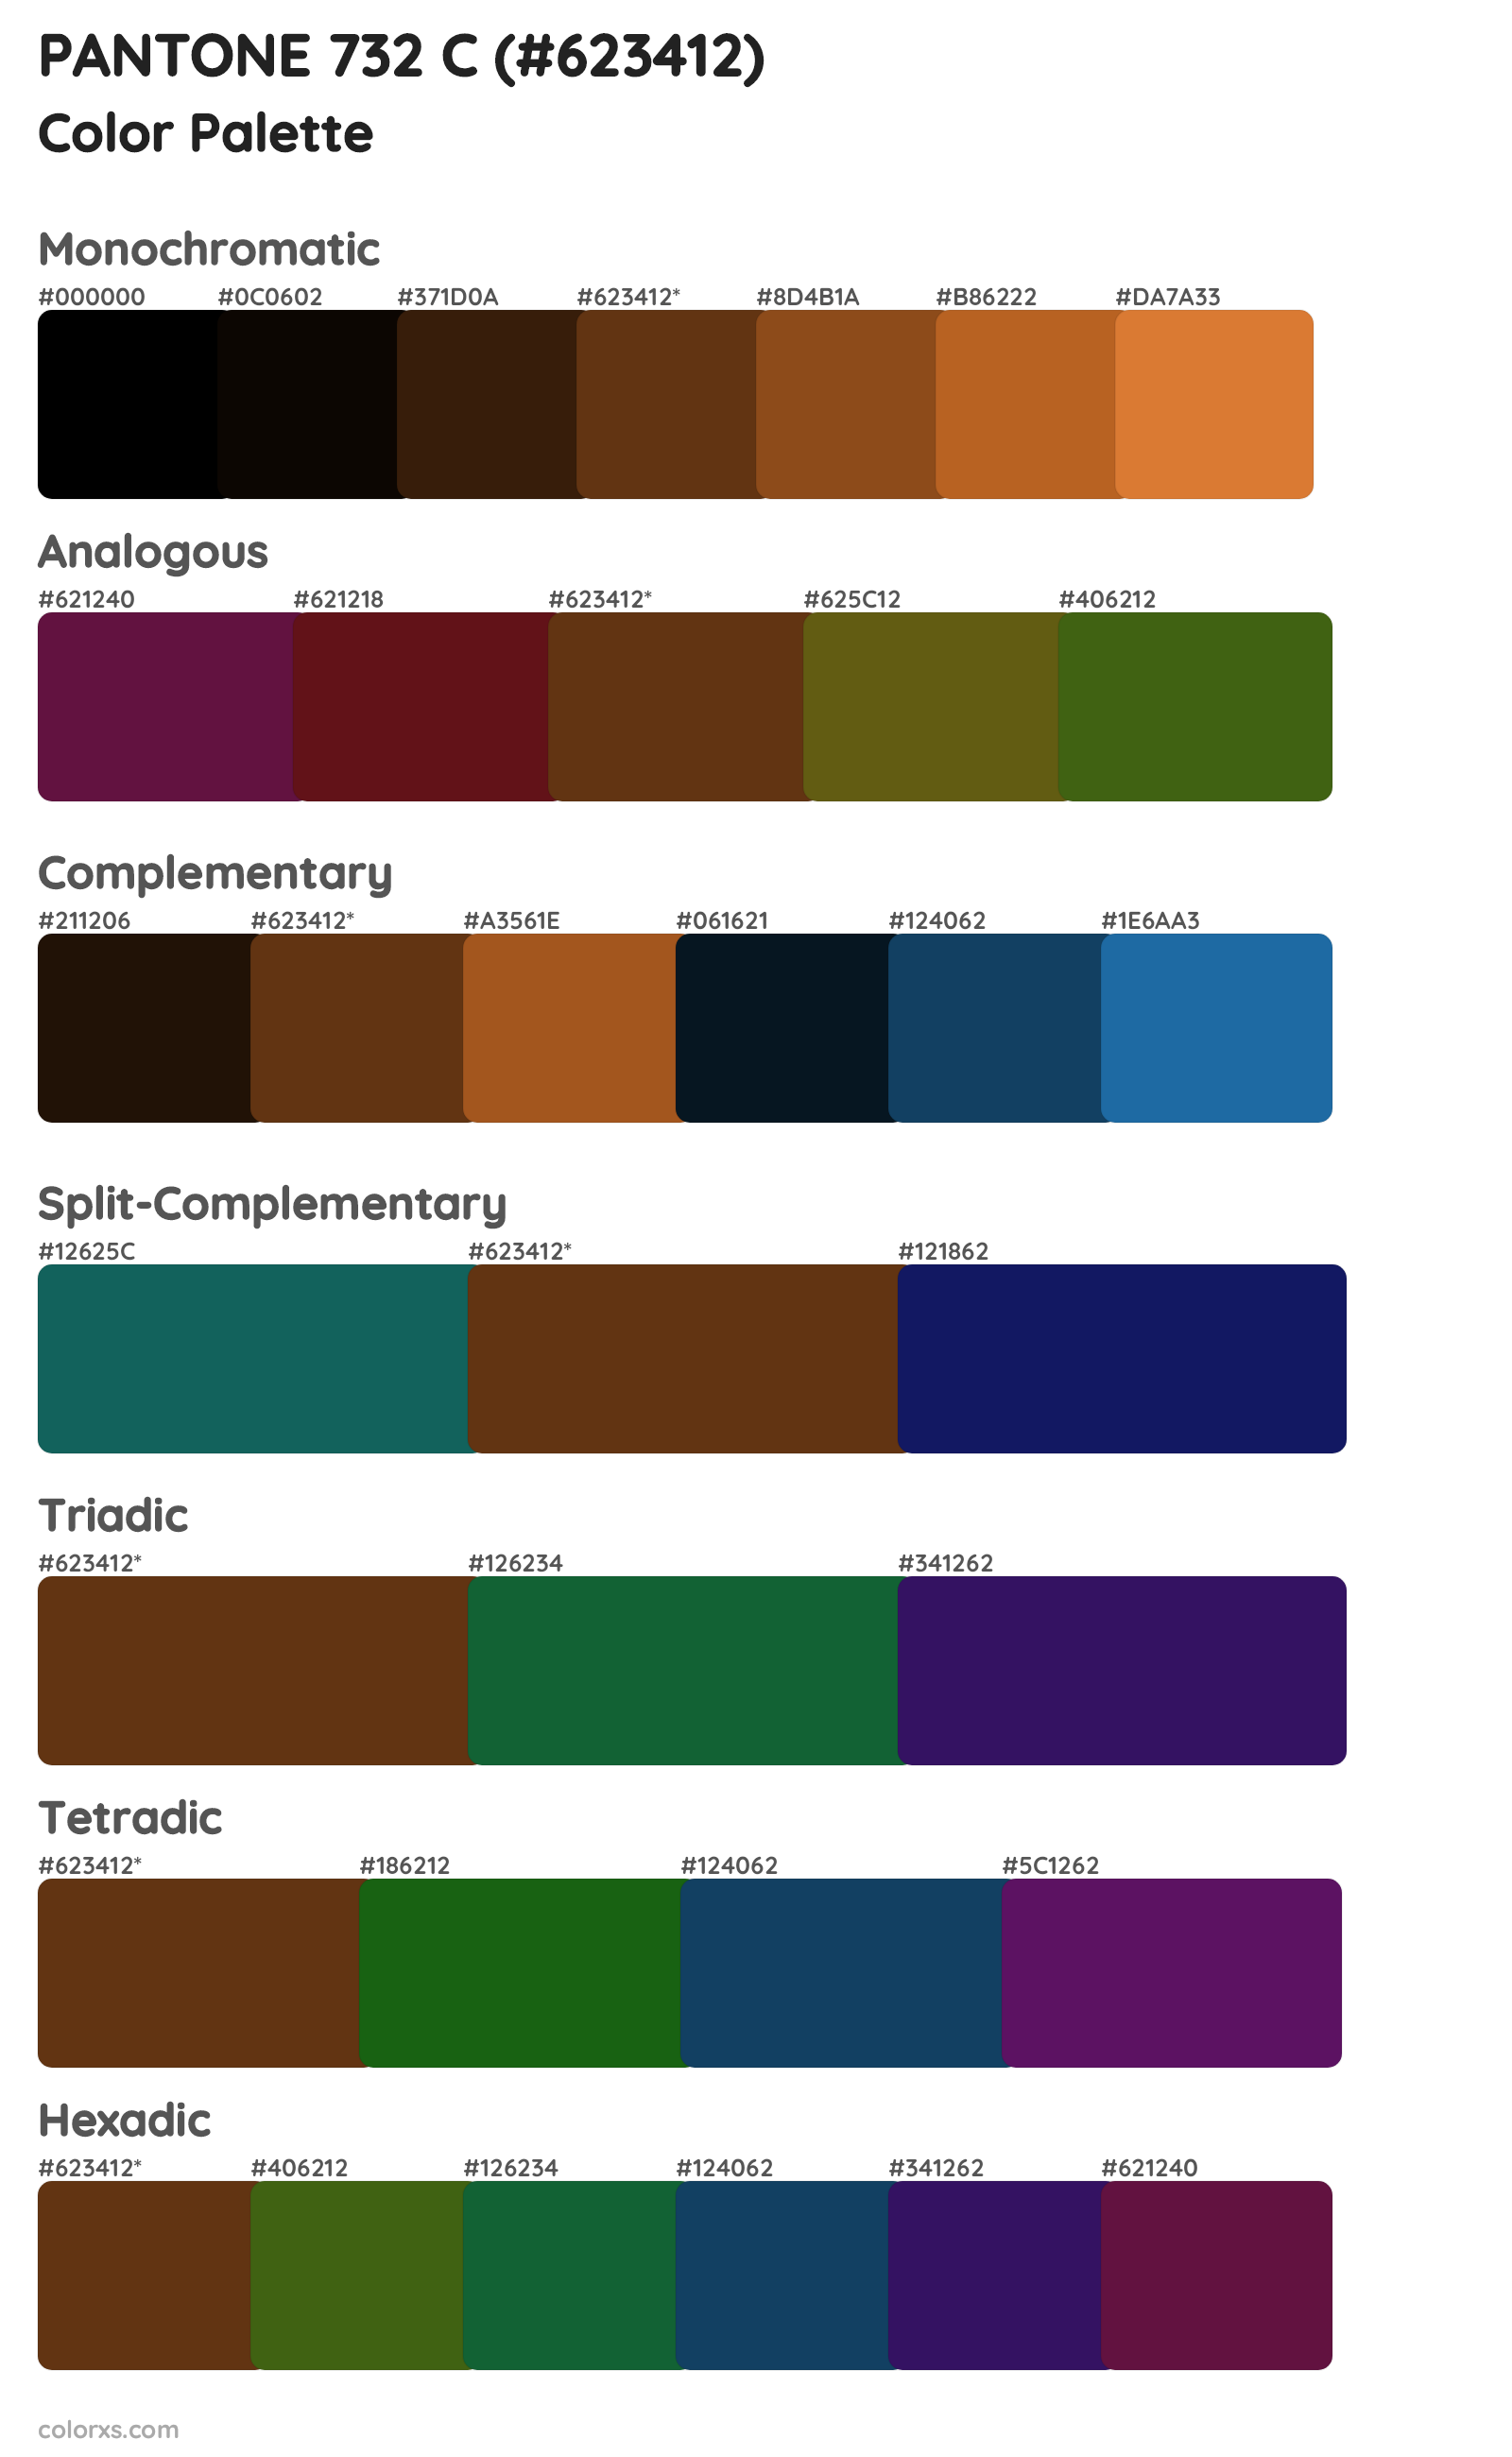 PANTONE 732 C Color Scheme Palettes